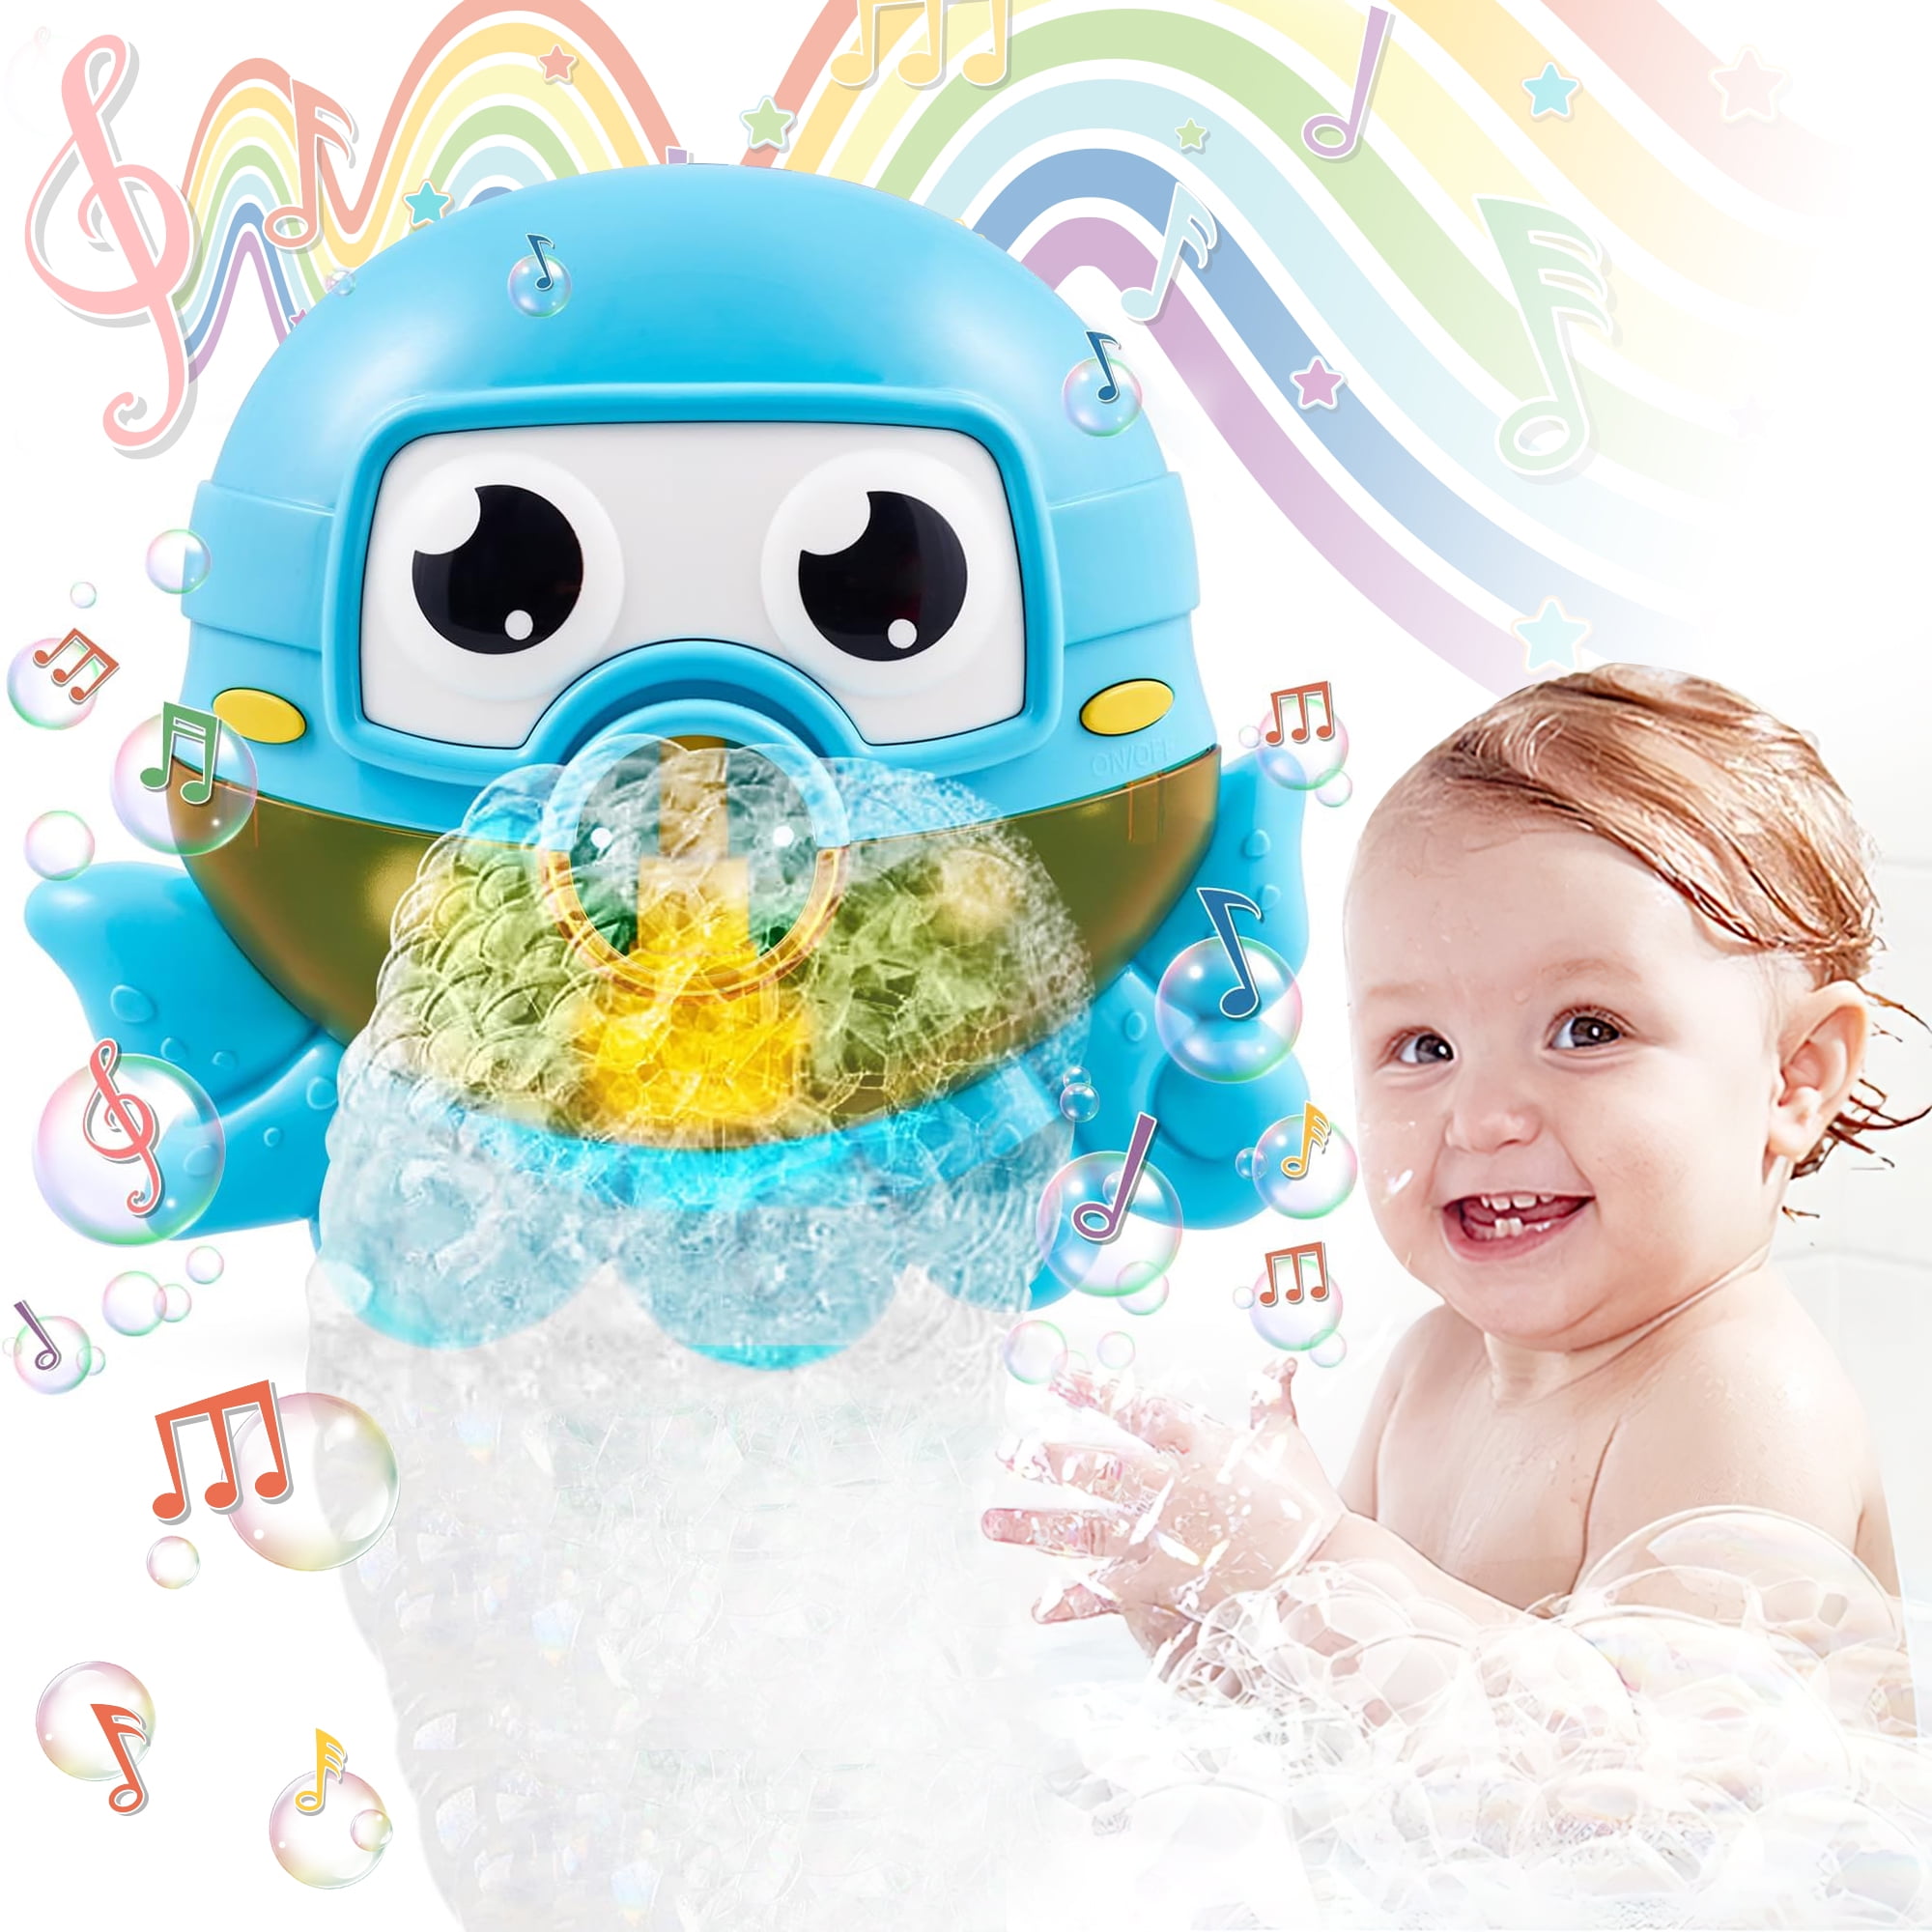  GFORI Baby Bath Bubble Toys Set,1000+ Bubbles Per